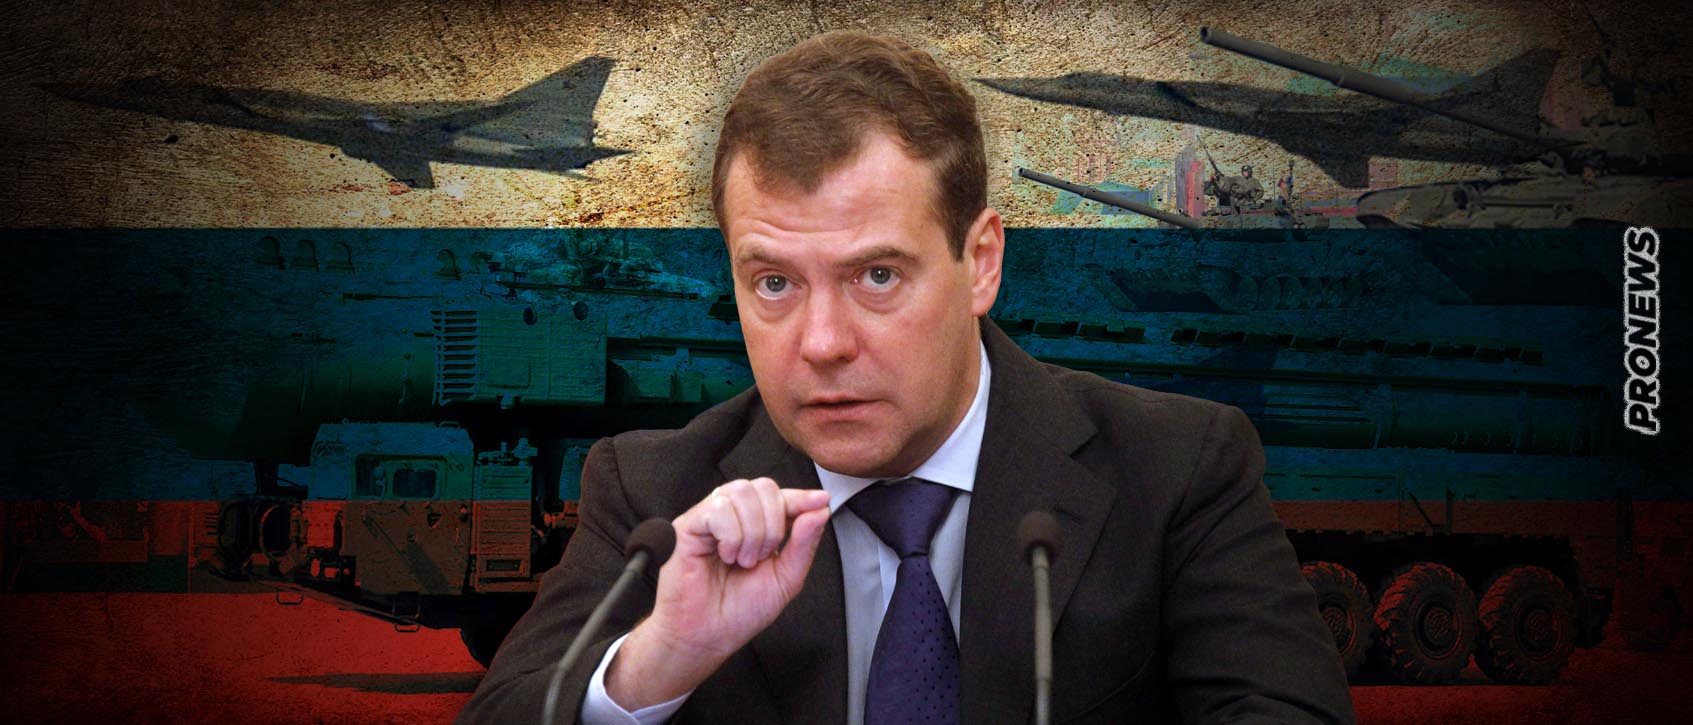 Ν.Μεντβέντεφ: «Οι Δυτικοί ας μην έχουν αυταπάτες – Αν κινδυνέψει η Ρωσία θα μεταφέρουμε τον πόλεμο εκτός Ουκρανίας»